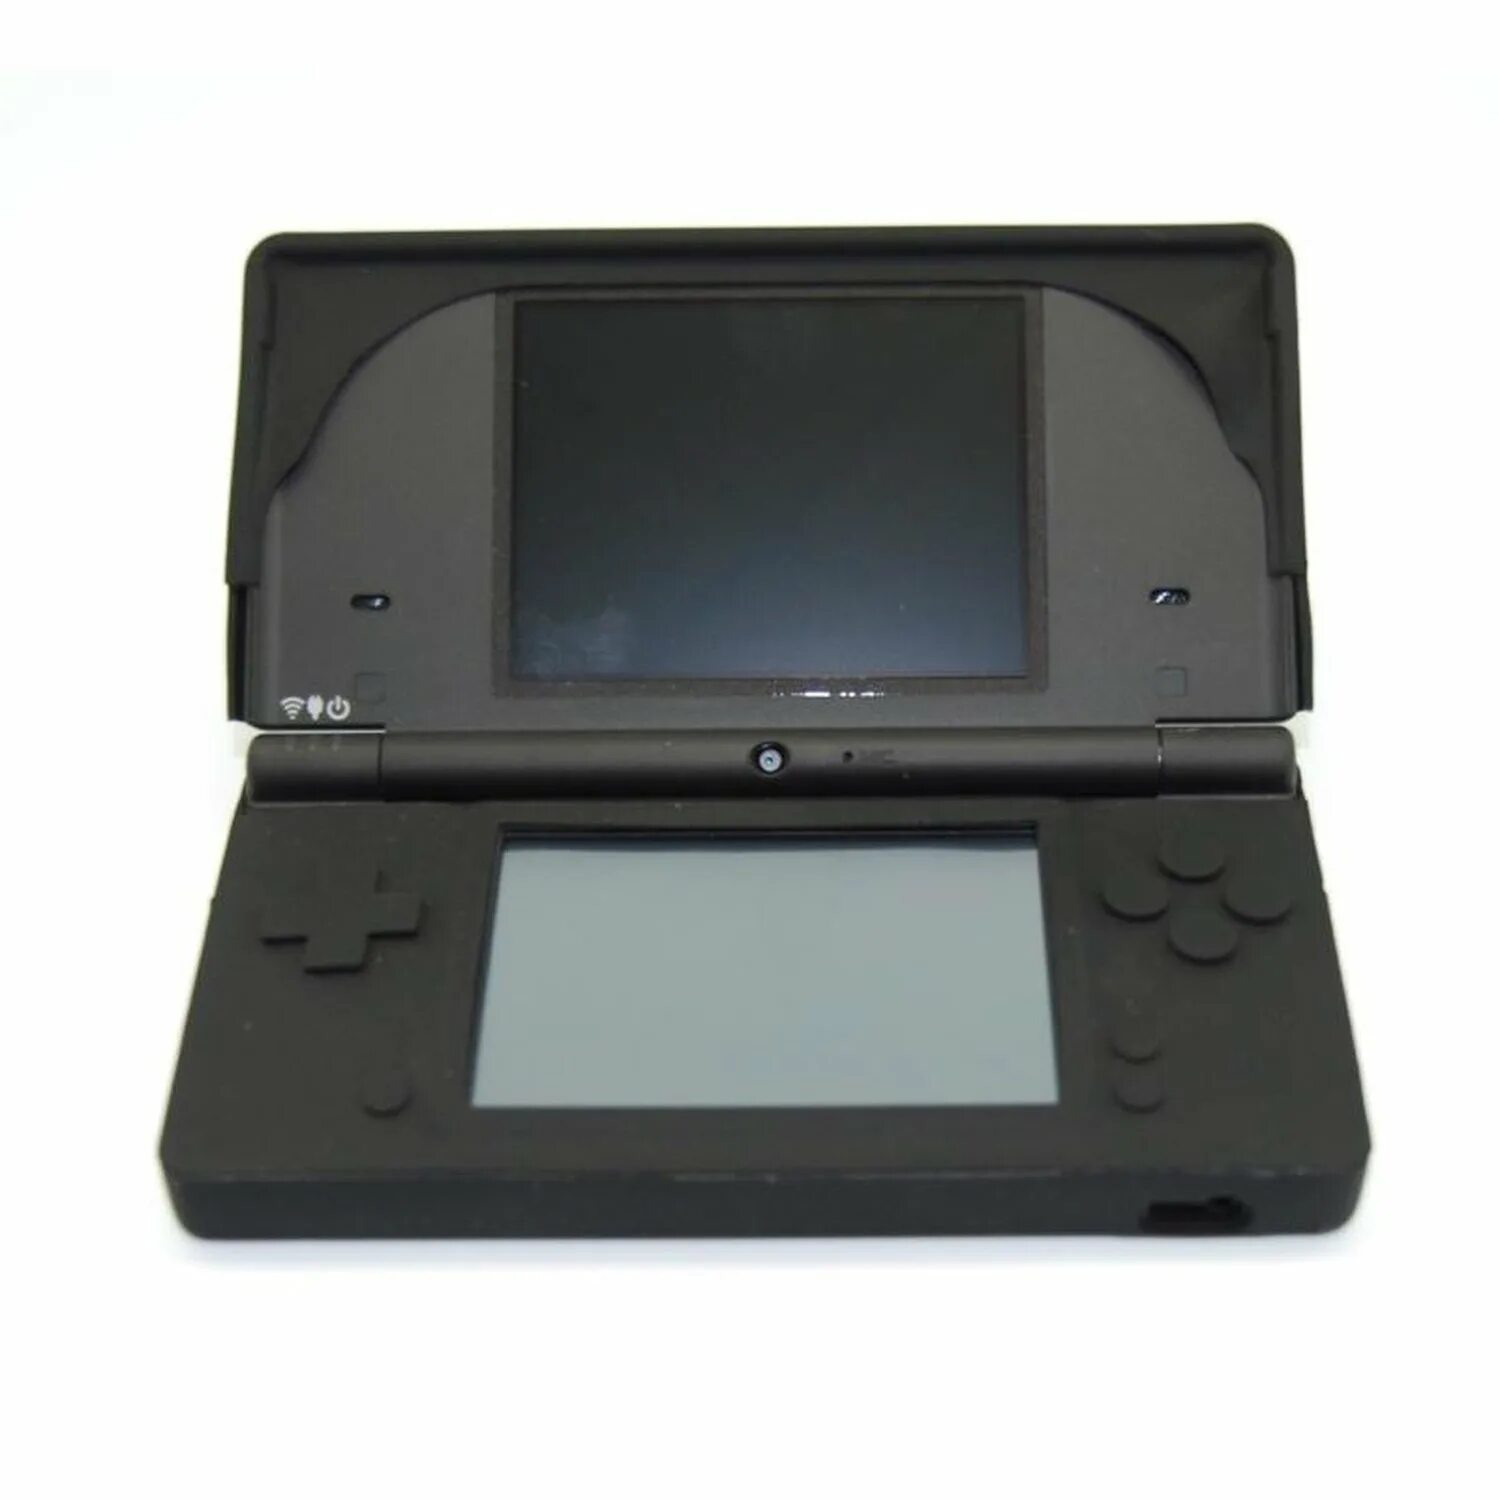 Nds оригинальные товары с гарантией. Nintendo DSI Black. Чехол Nintendo DSI. Nintendo DS fat Case. Купить корпус на Nintendo DSI.